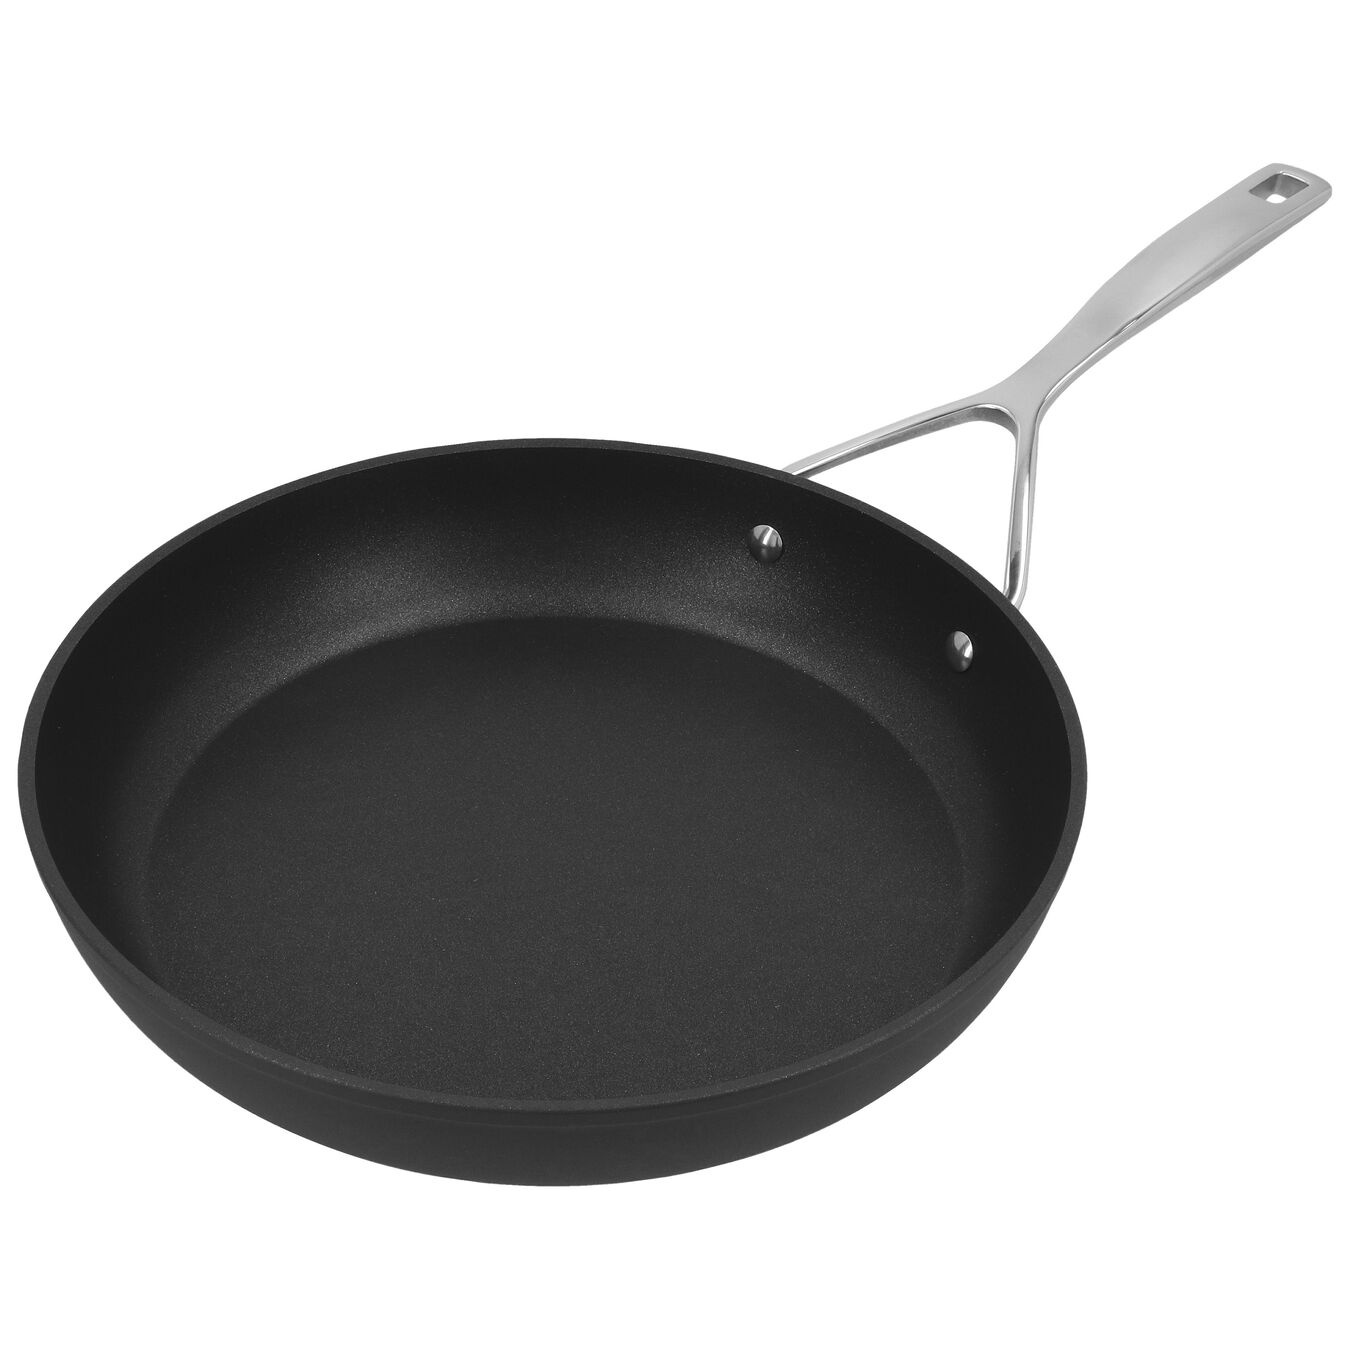 28 cm Aluminium Frying pan silver-black,,large 5